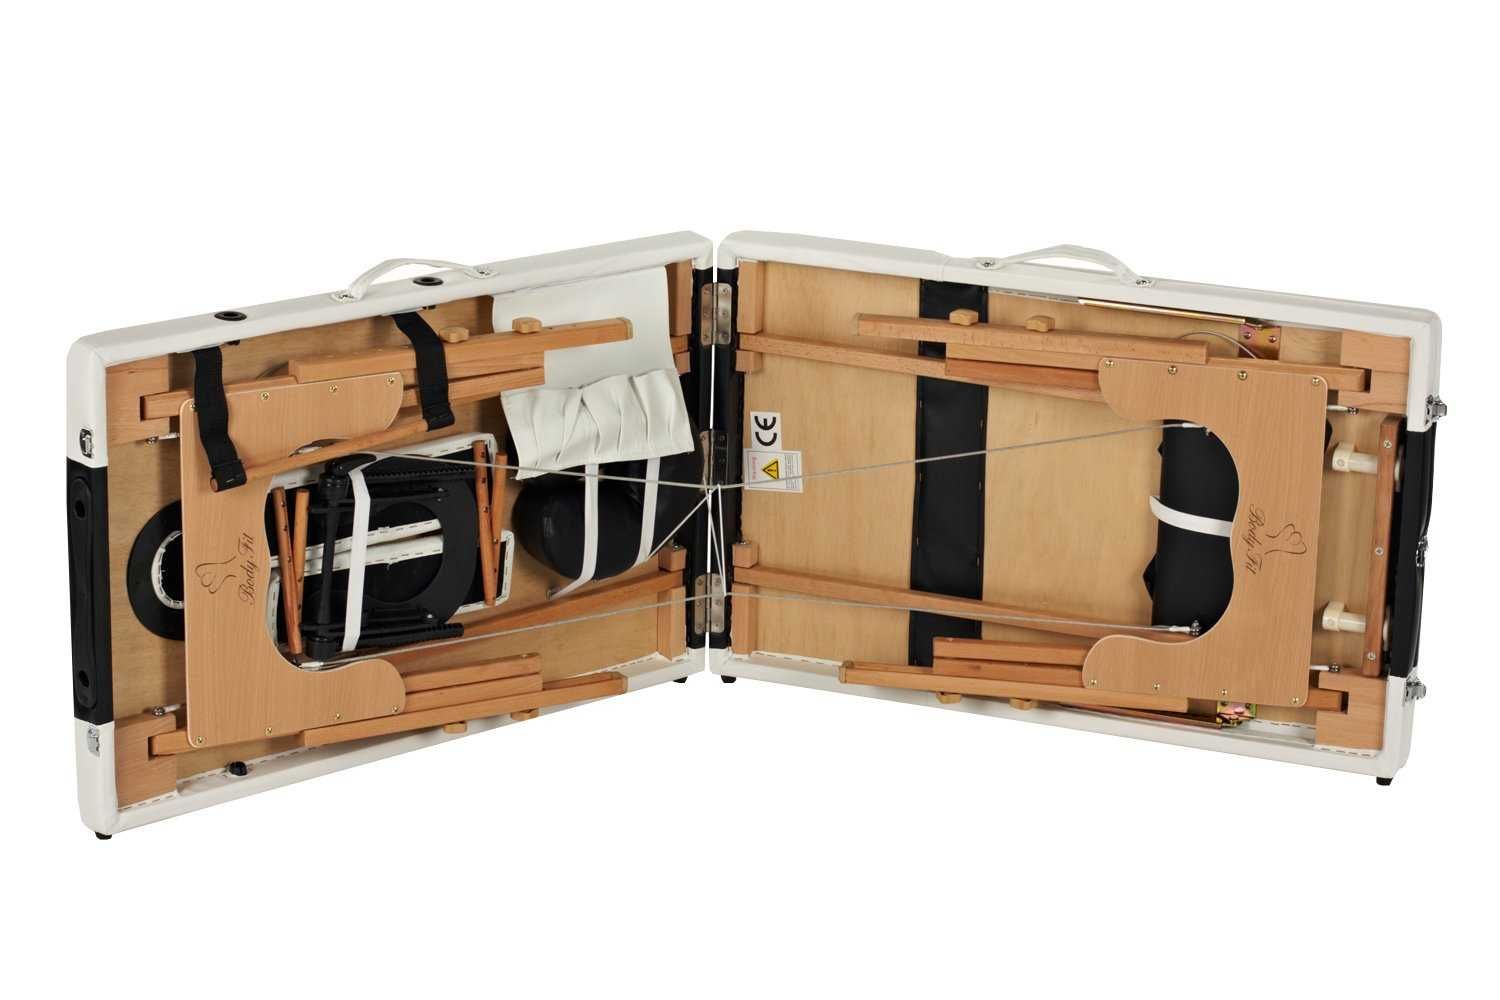 Stół, łóżko do masażu 2-segmentowe drewniane dwukolorowe